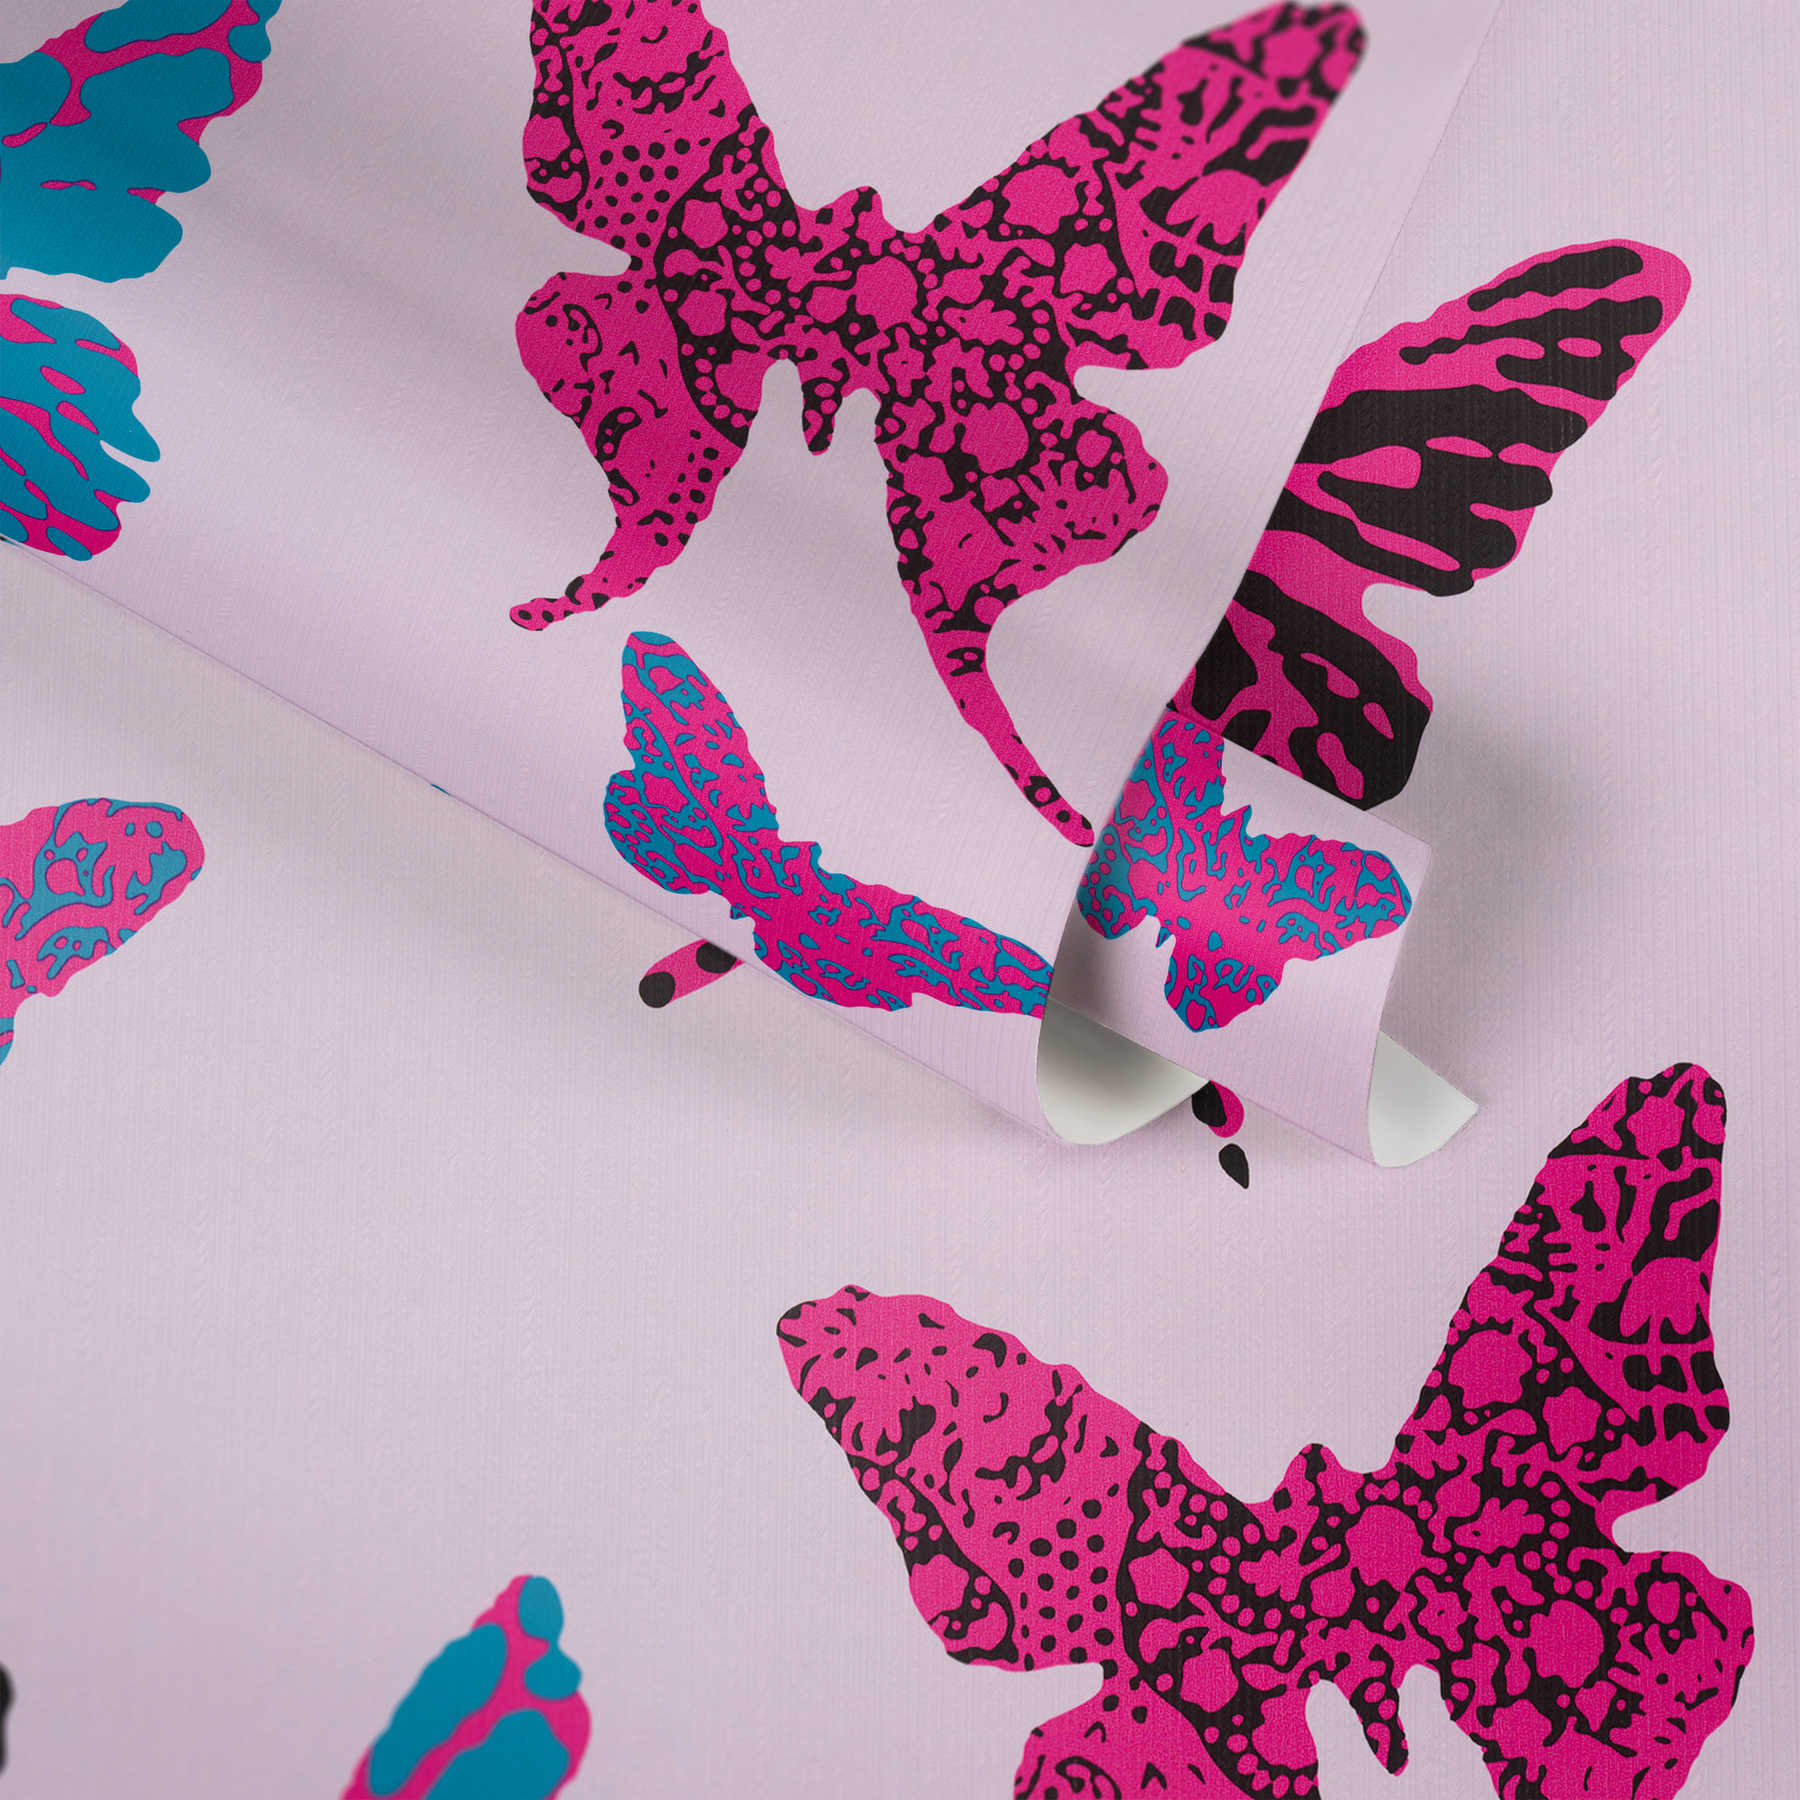             Papiers peints graphiques papillon pour chambre d'enfant - violet, bleu
        